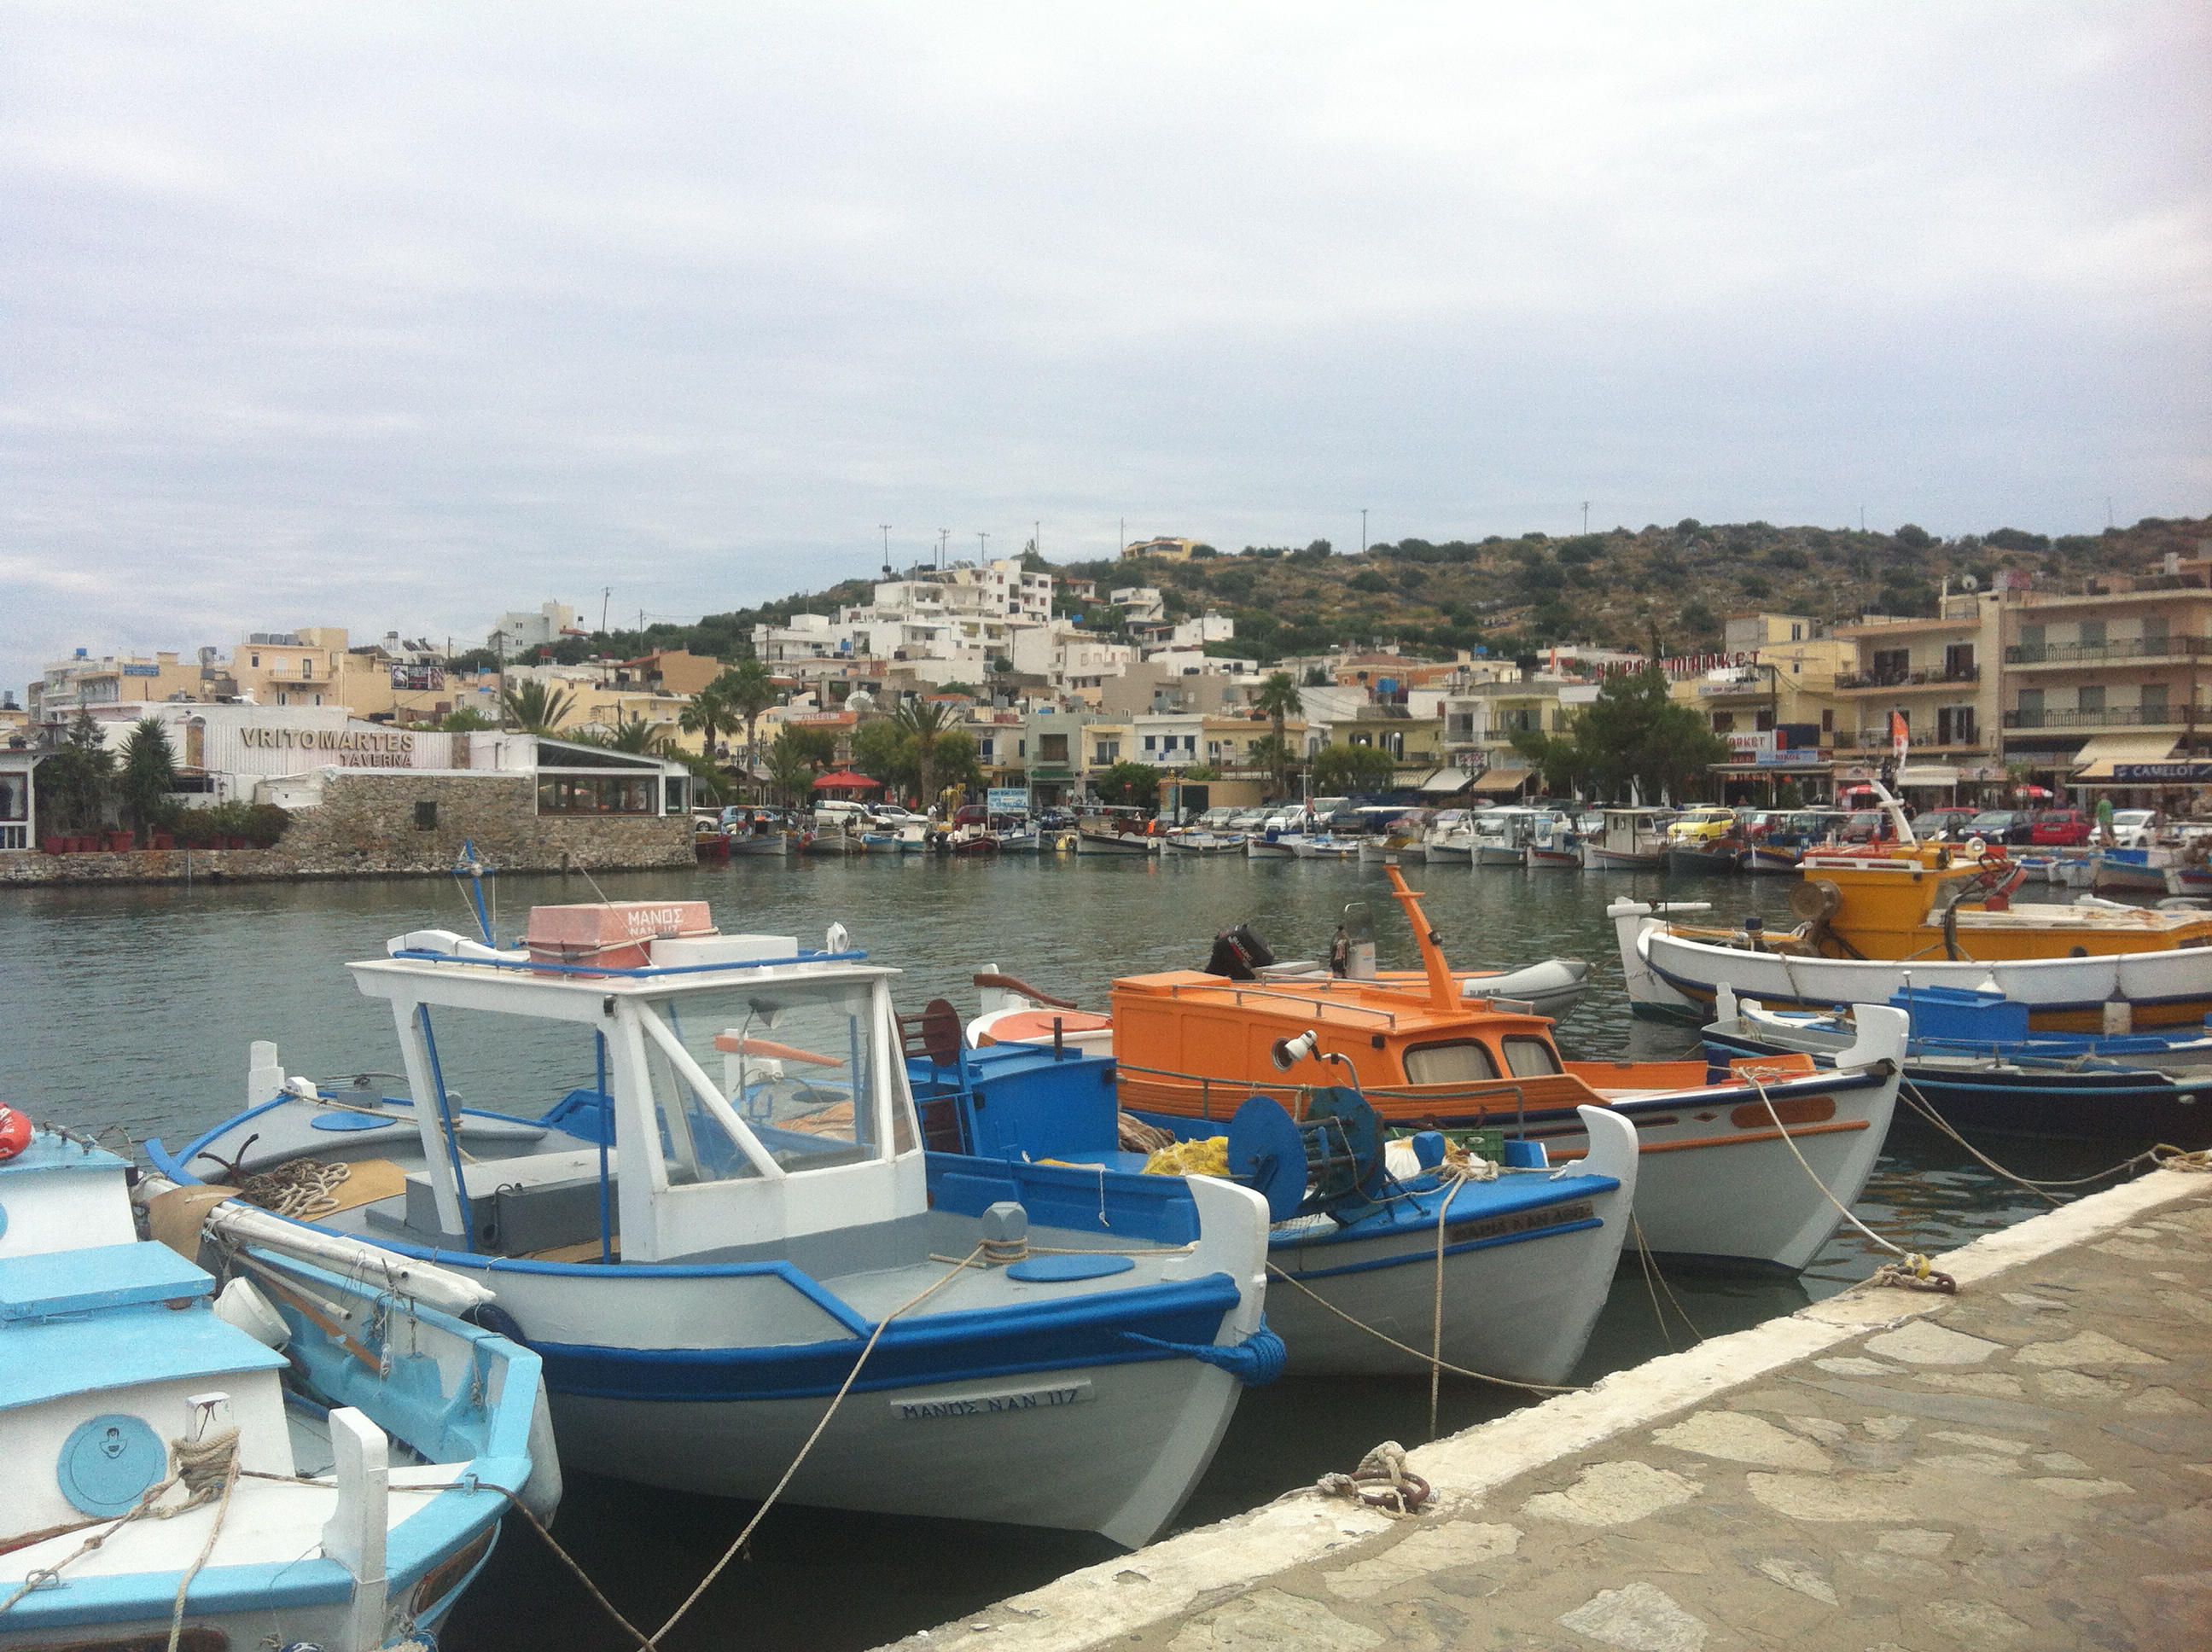 Urlaub auf Kreta. Reisetipps von der Schminktante